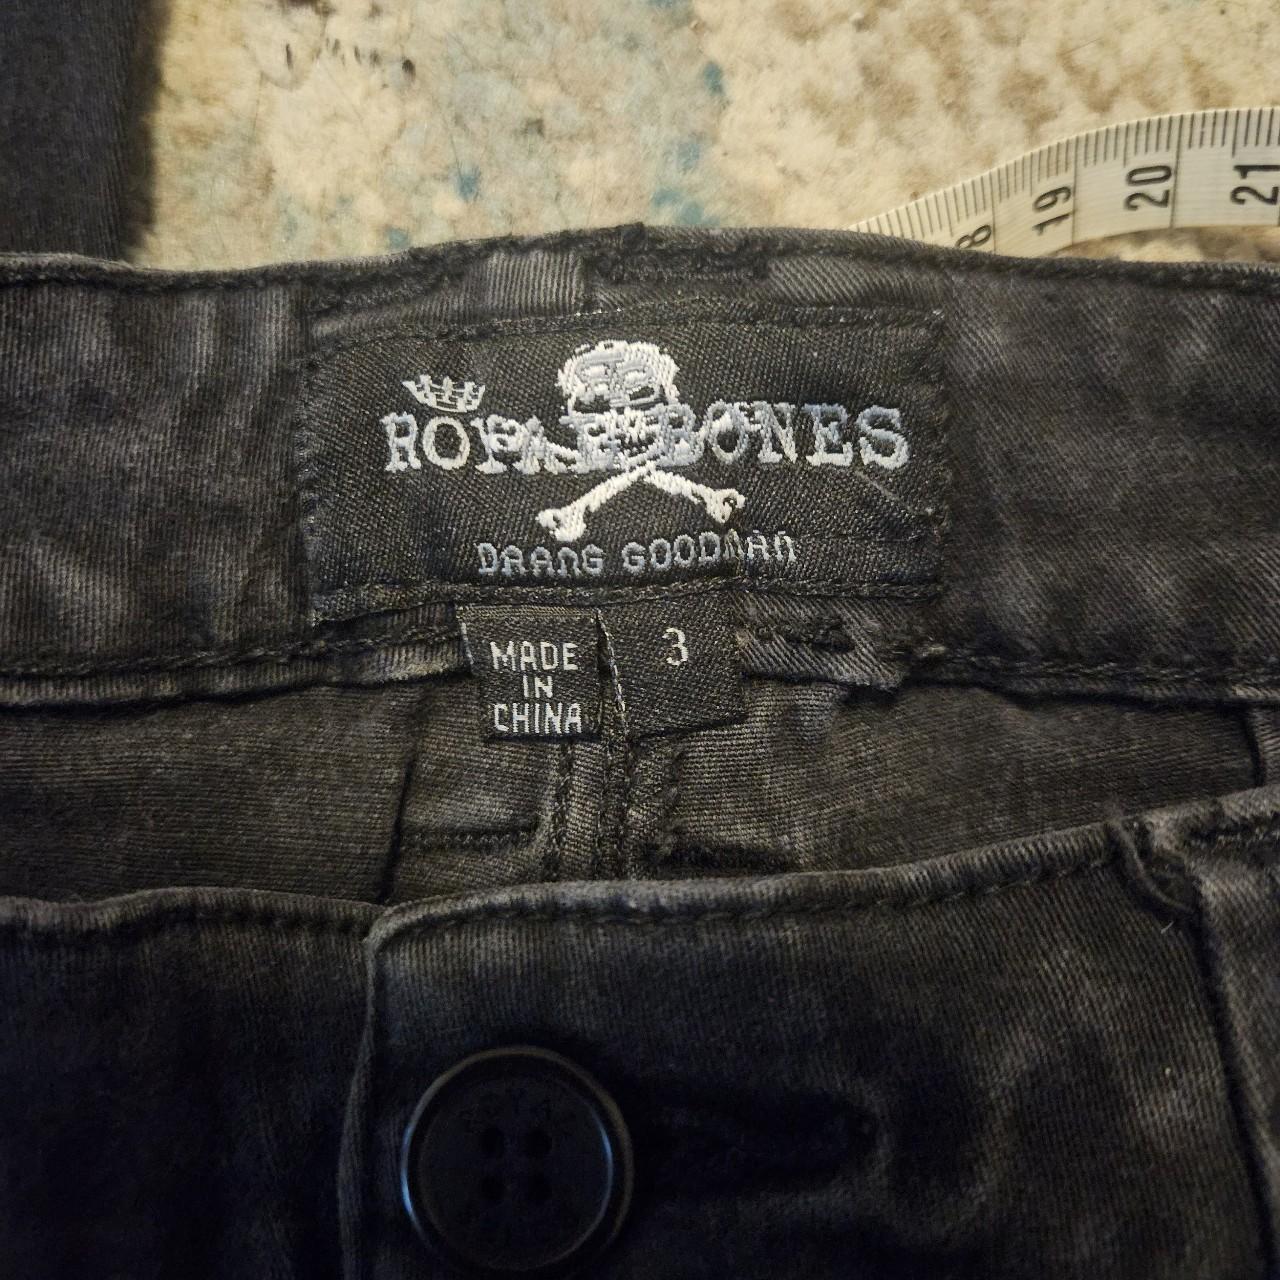 Royal Bones By Tripp Black Strap Skinny Jeans Plus Size